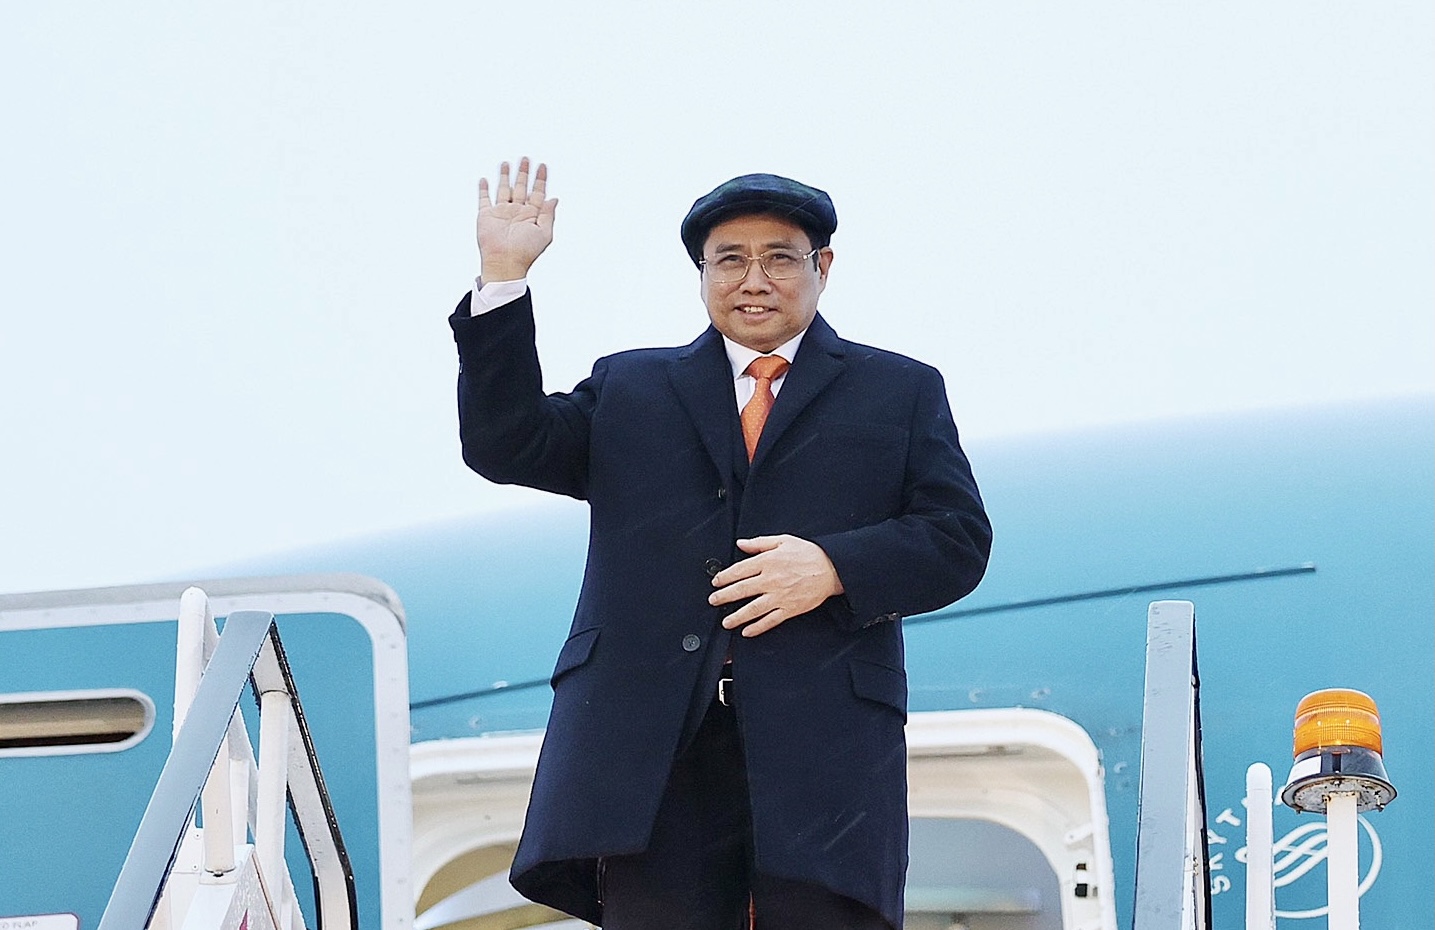 Thủ tướng Phạm Minh Chính bắt đầu chuyến tham dự COP26 và thăm làm việc tại Anh